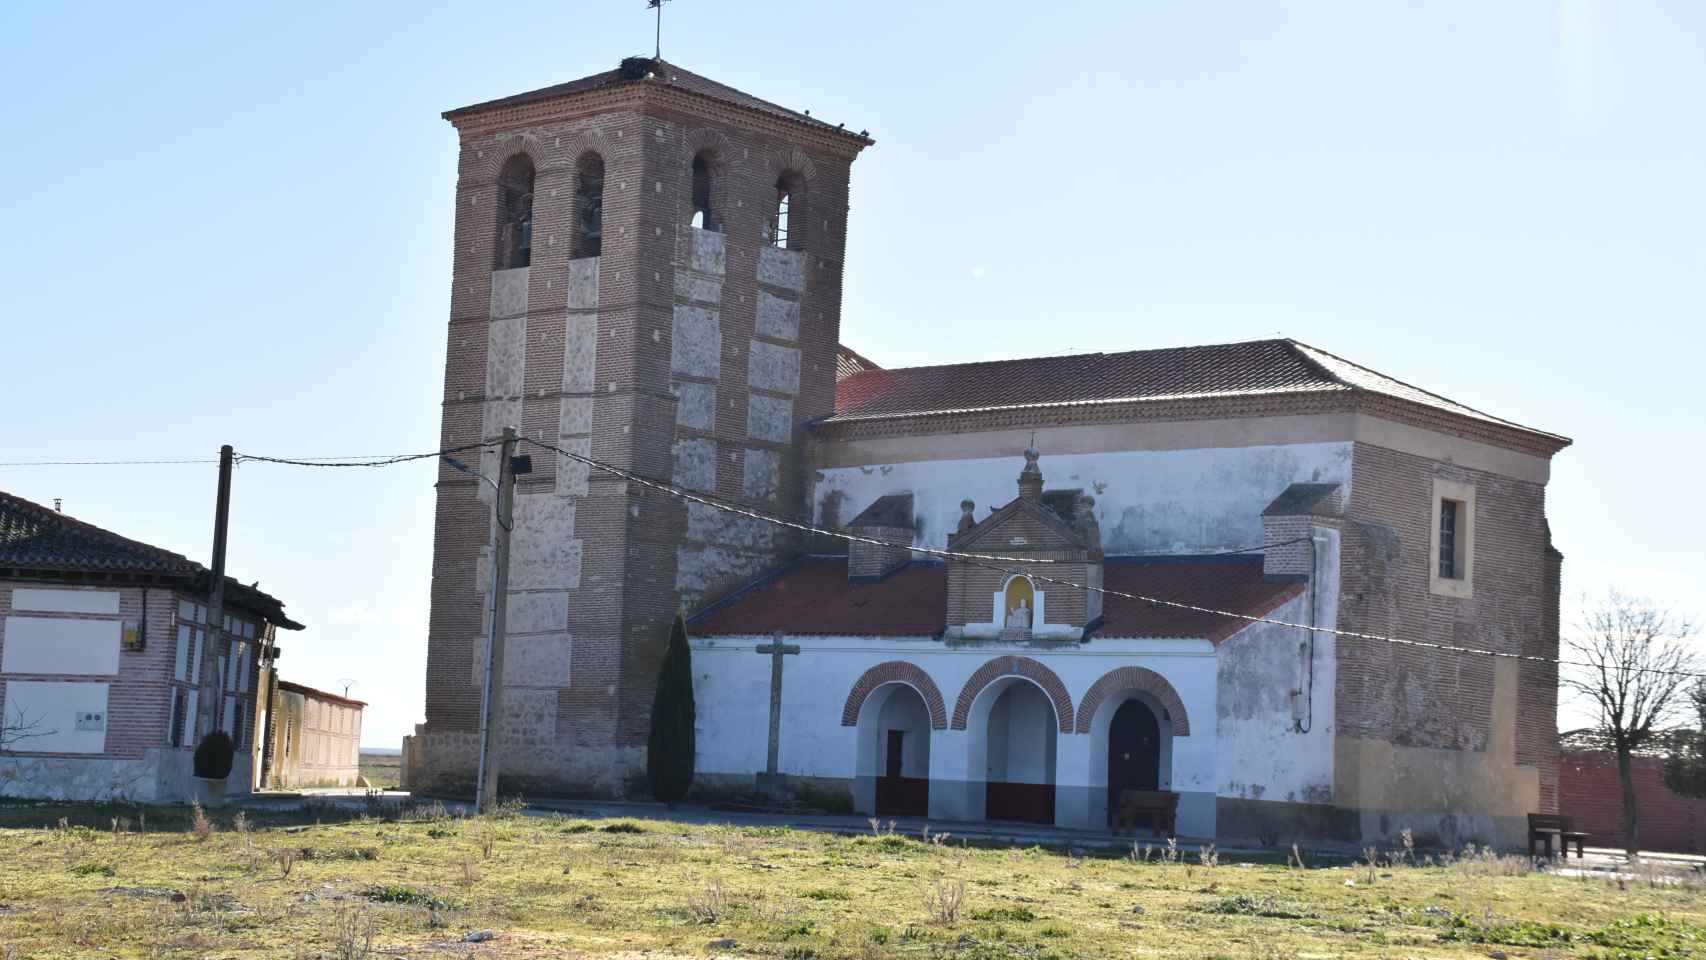 La Iglesia de San Pedro